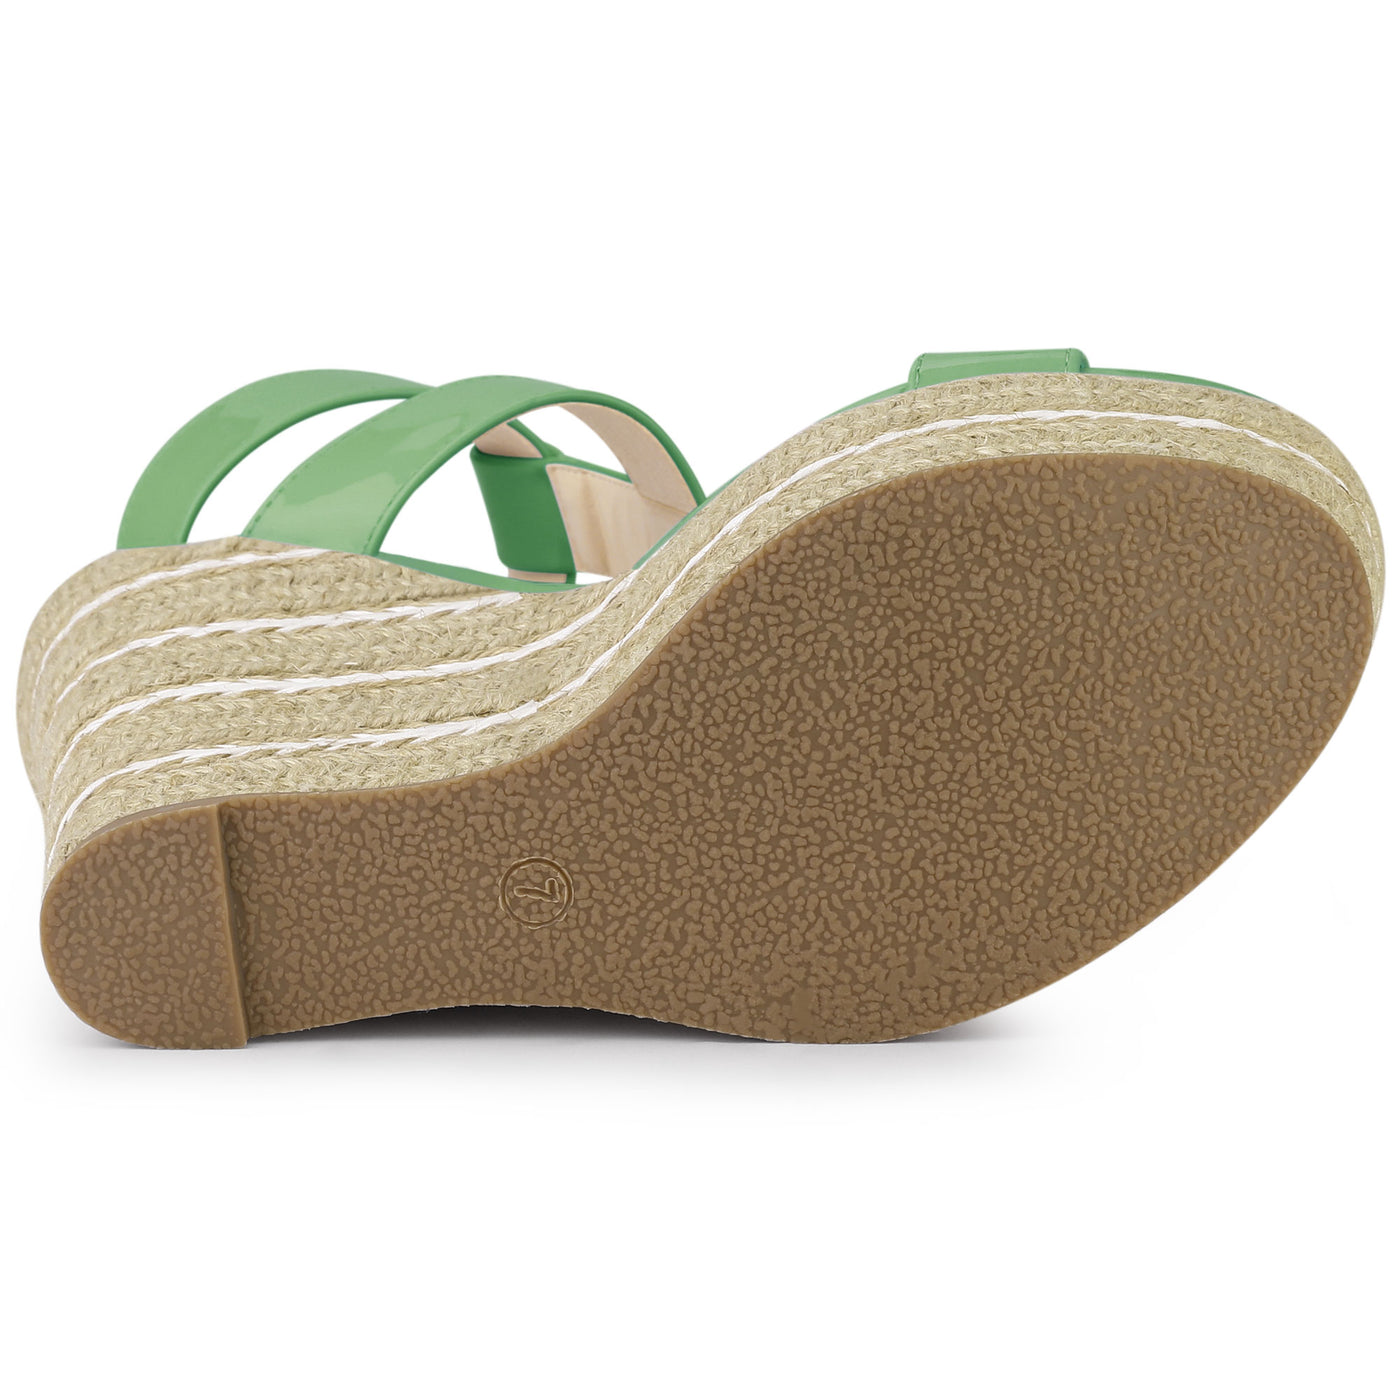 Allegra K Espadrille Strappy Platform Wedges Sandals